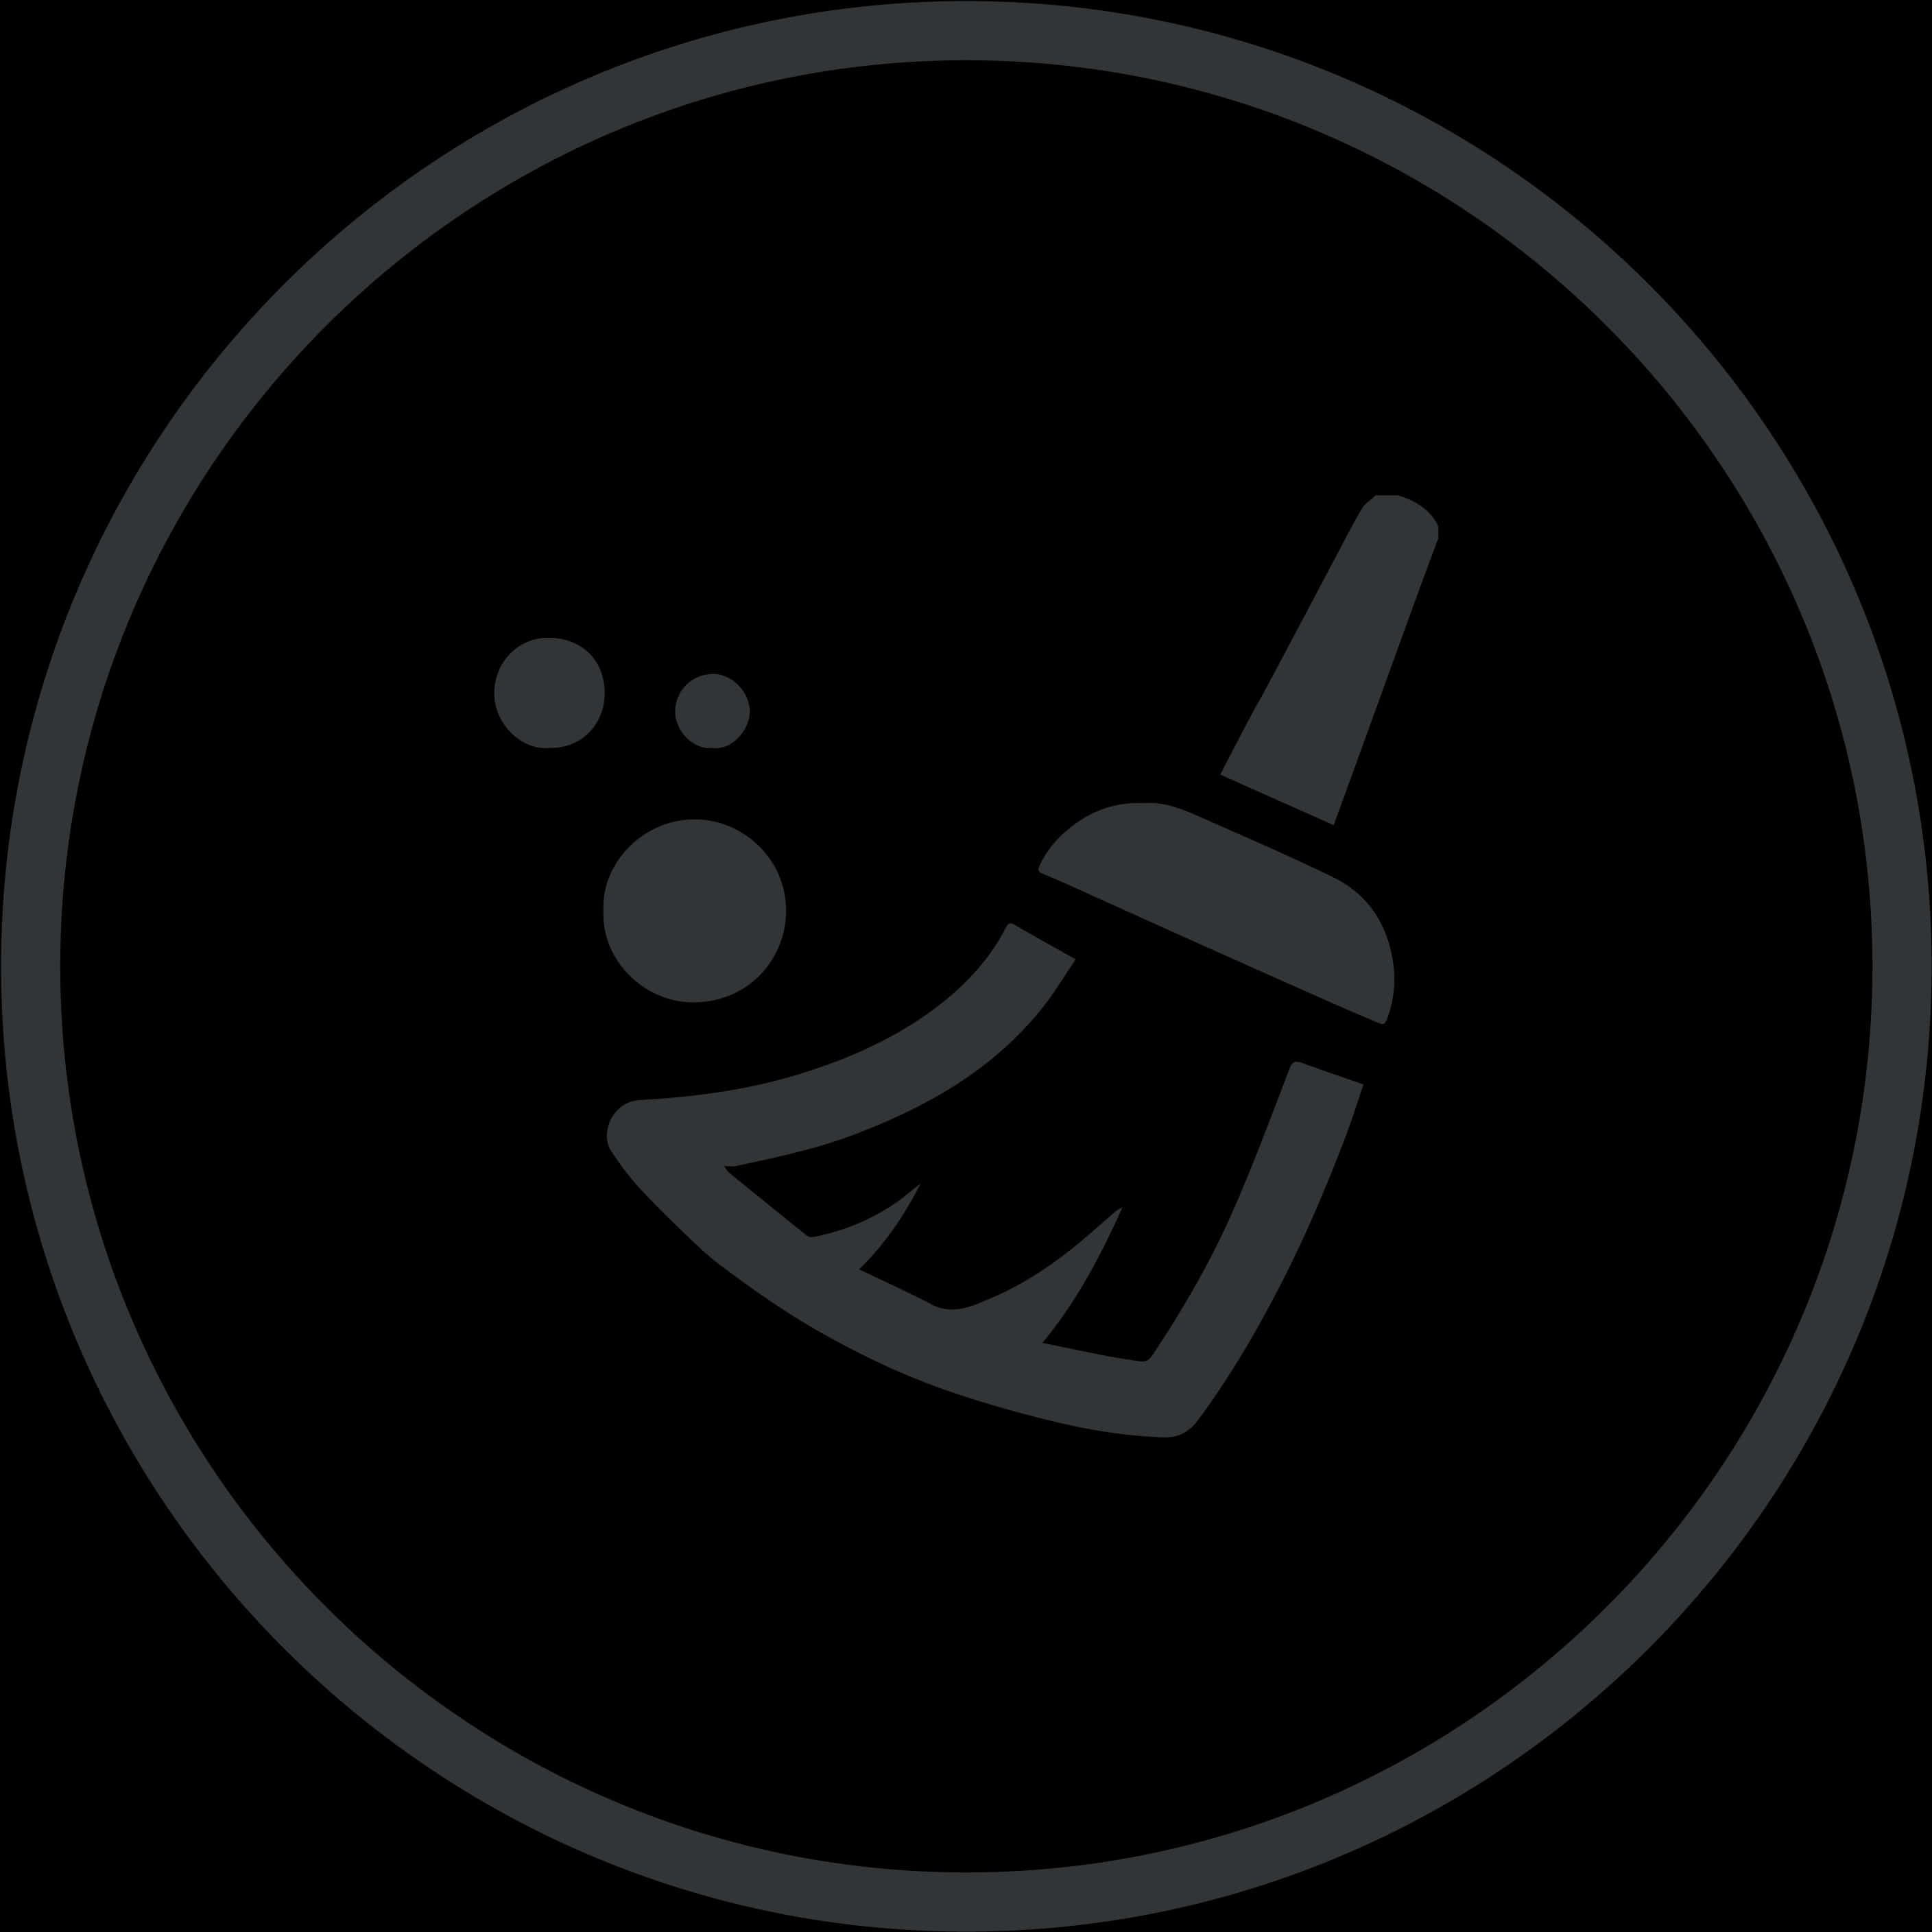 A Logo Of A Broom